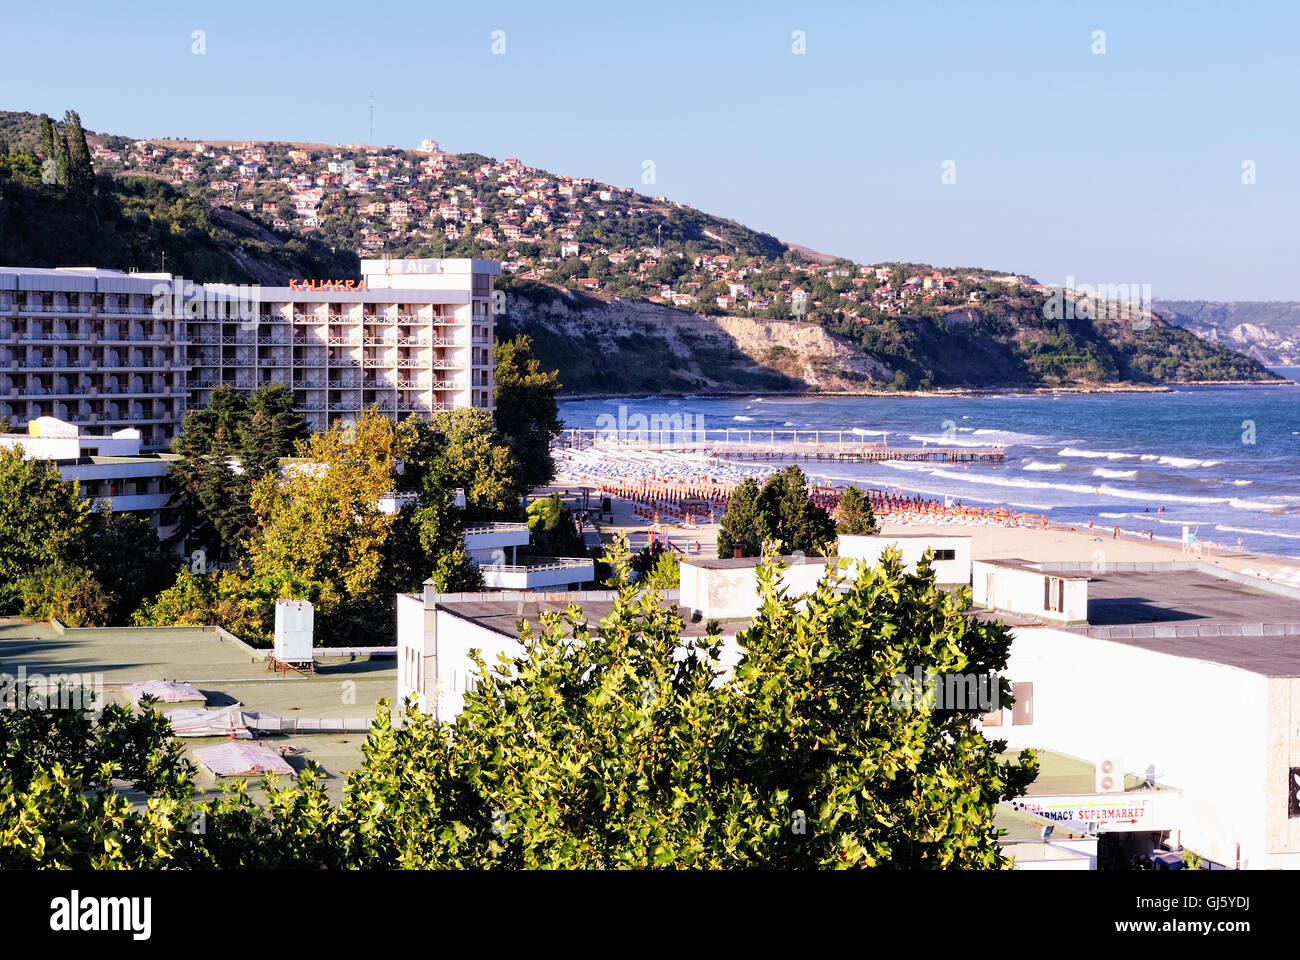 Bulgarischen Kurort Albena. Kaliakra Hotel und Strand im Vordergrund; Balchik im Hintergrund. Stockfoto